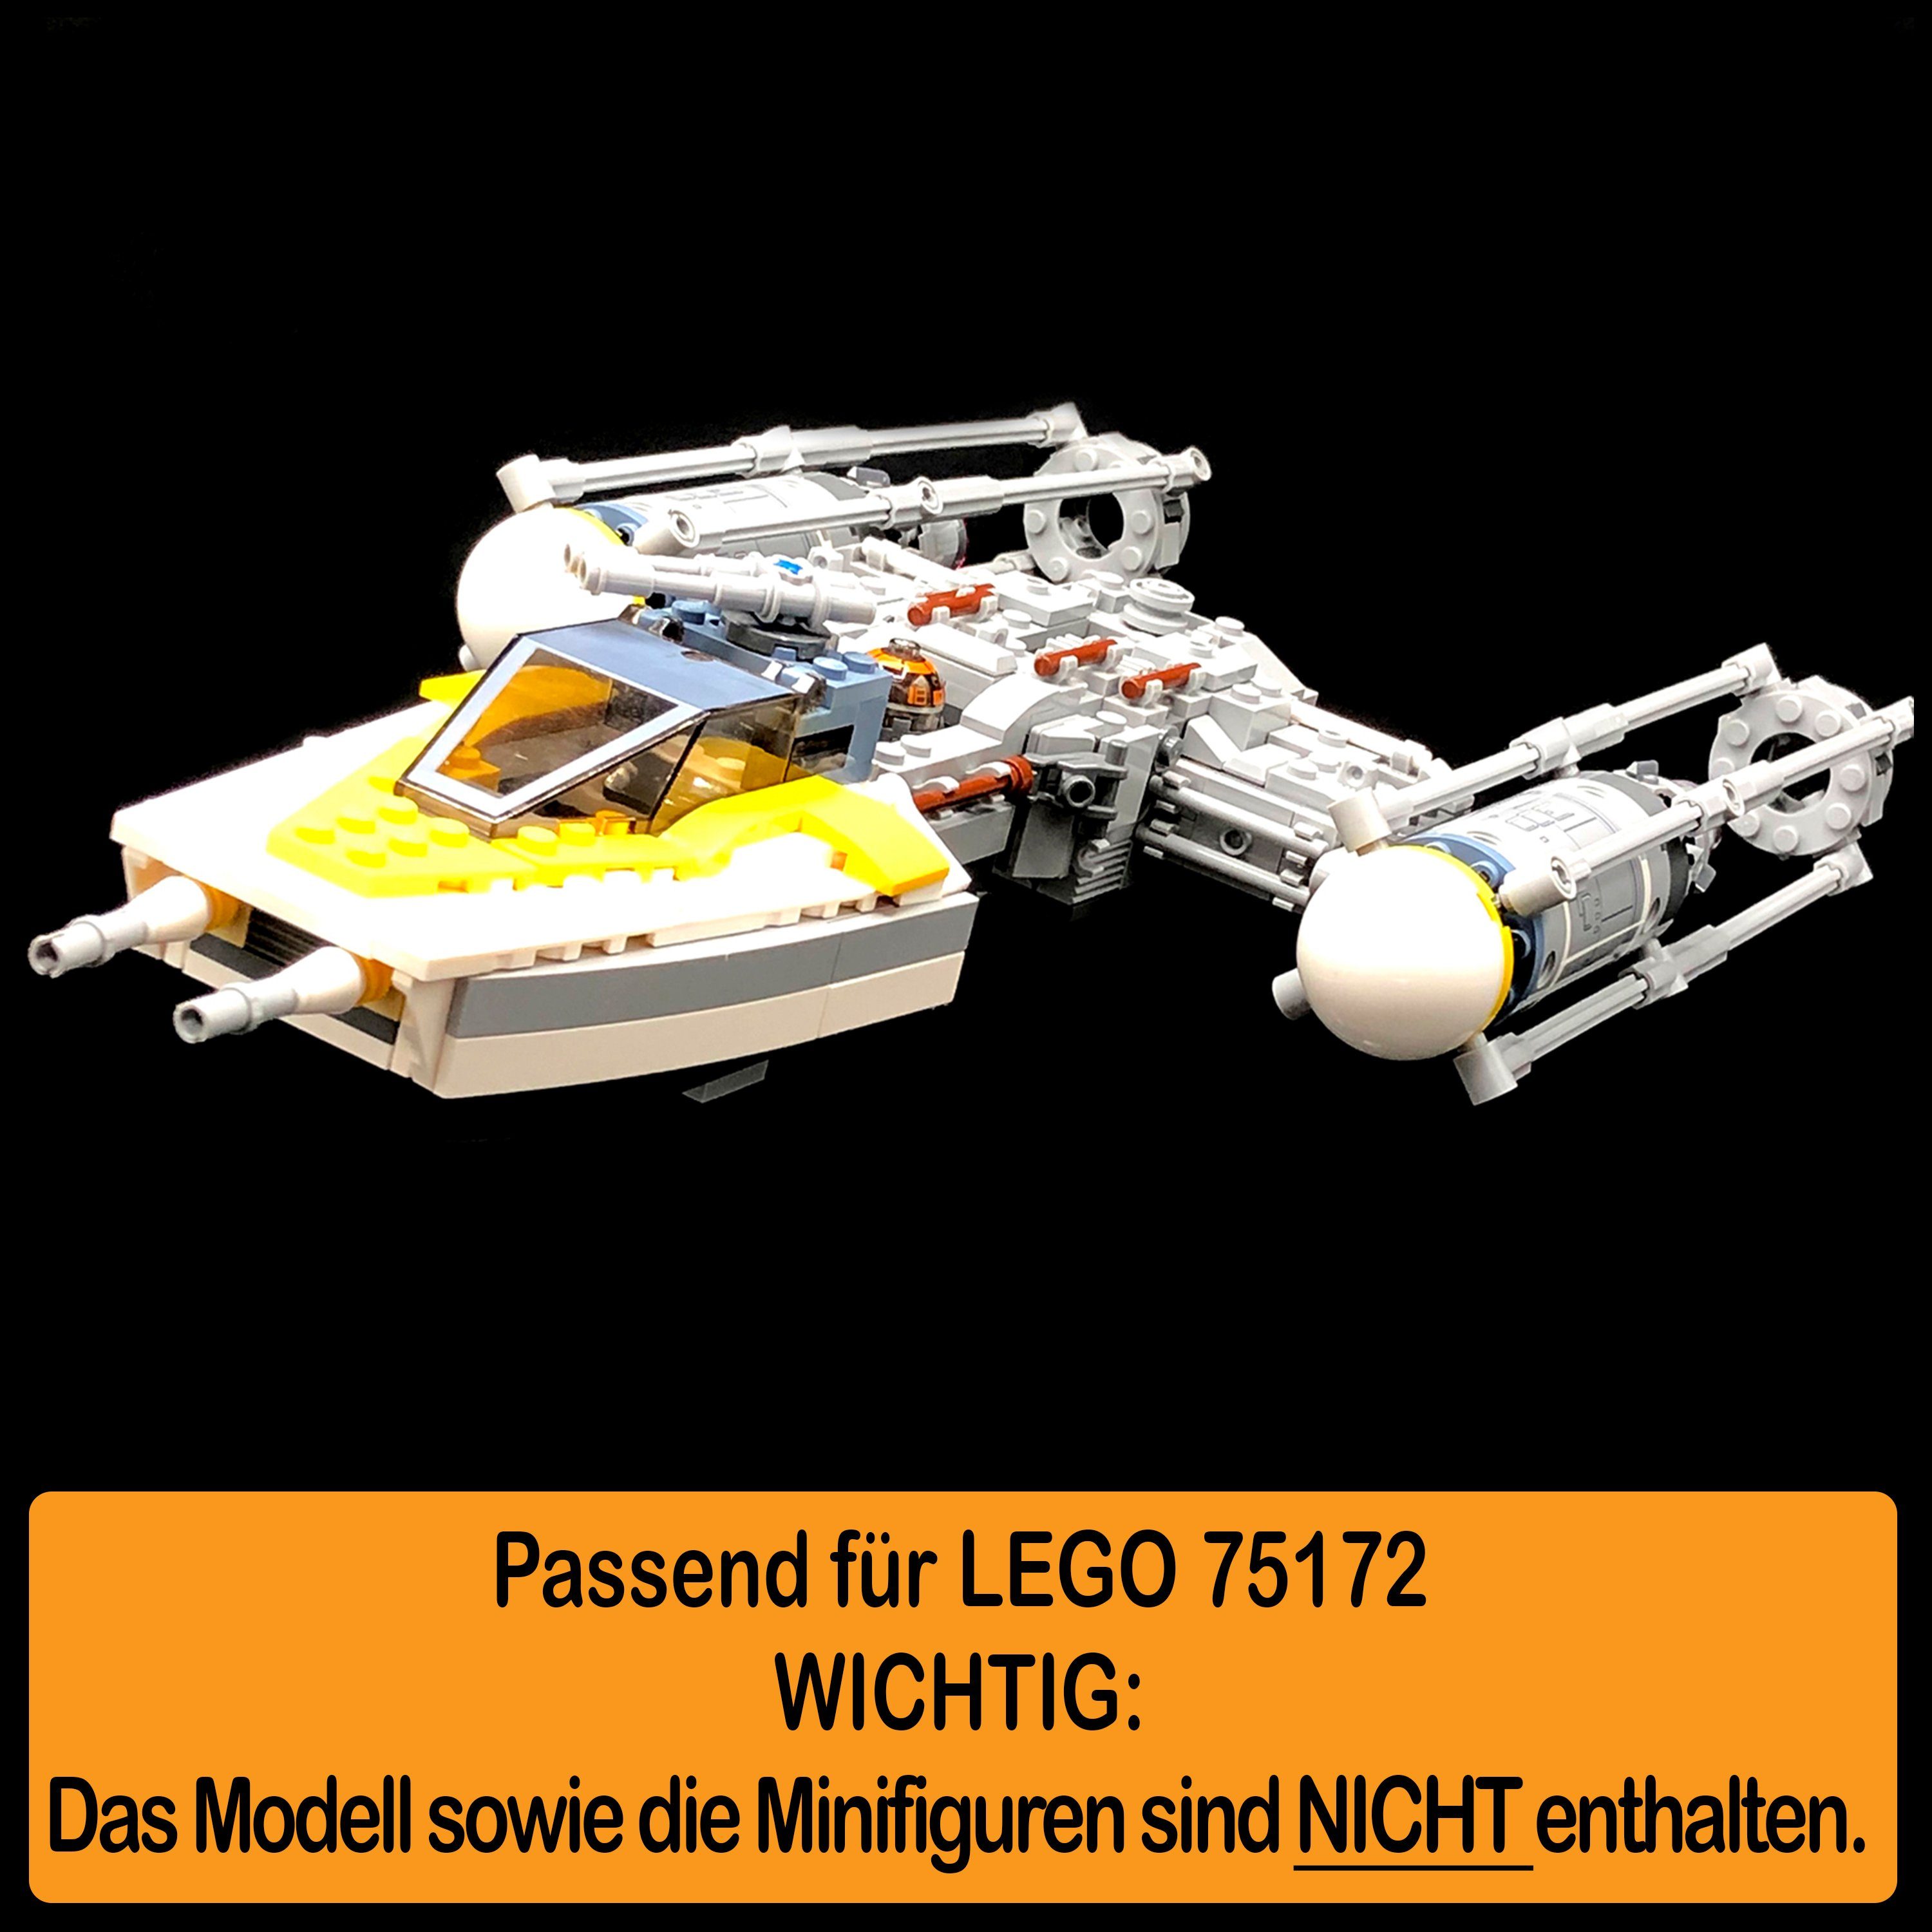 AREA17 Standfuß Acryl Display Stand einstellbar, (verschiedene Starfighter für 100% selbst zusammenbauen), Germany 75172 Made und zum Winkel in Y-Wing Positionen LEGO